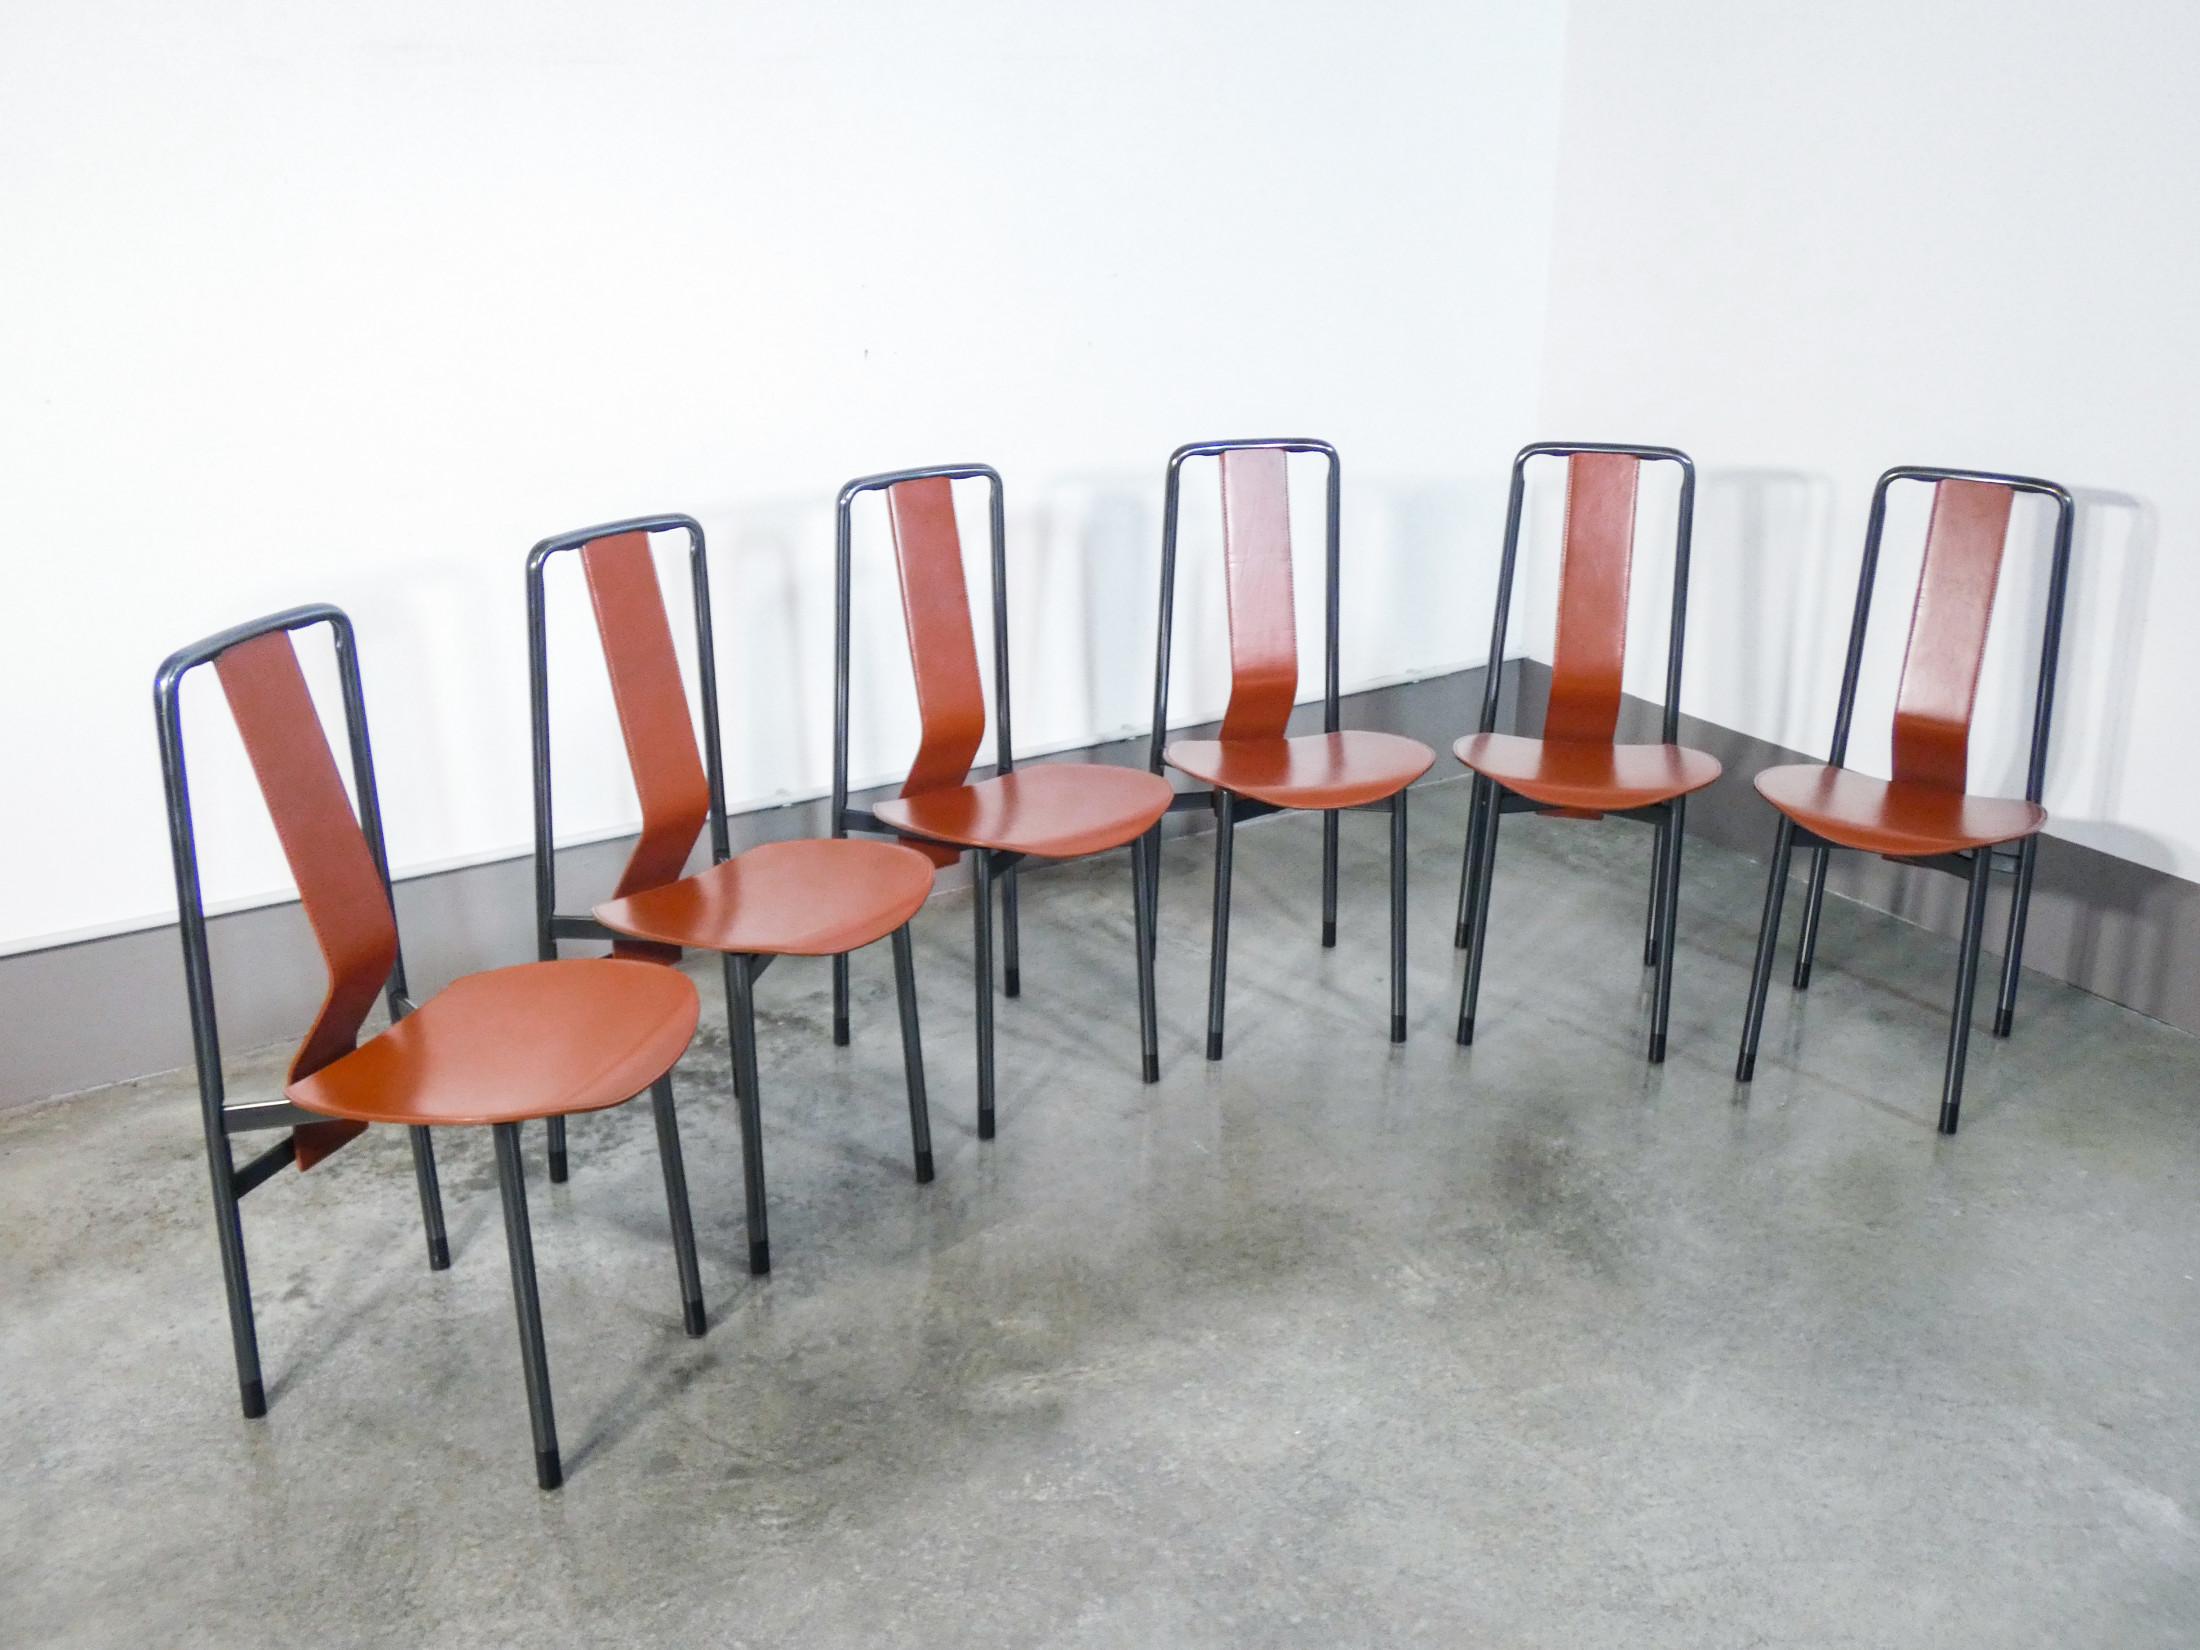 Italian Set of Six Irma Chairs, Designed by Achille Castiglioni for Zanotta. Italy, 1979